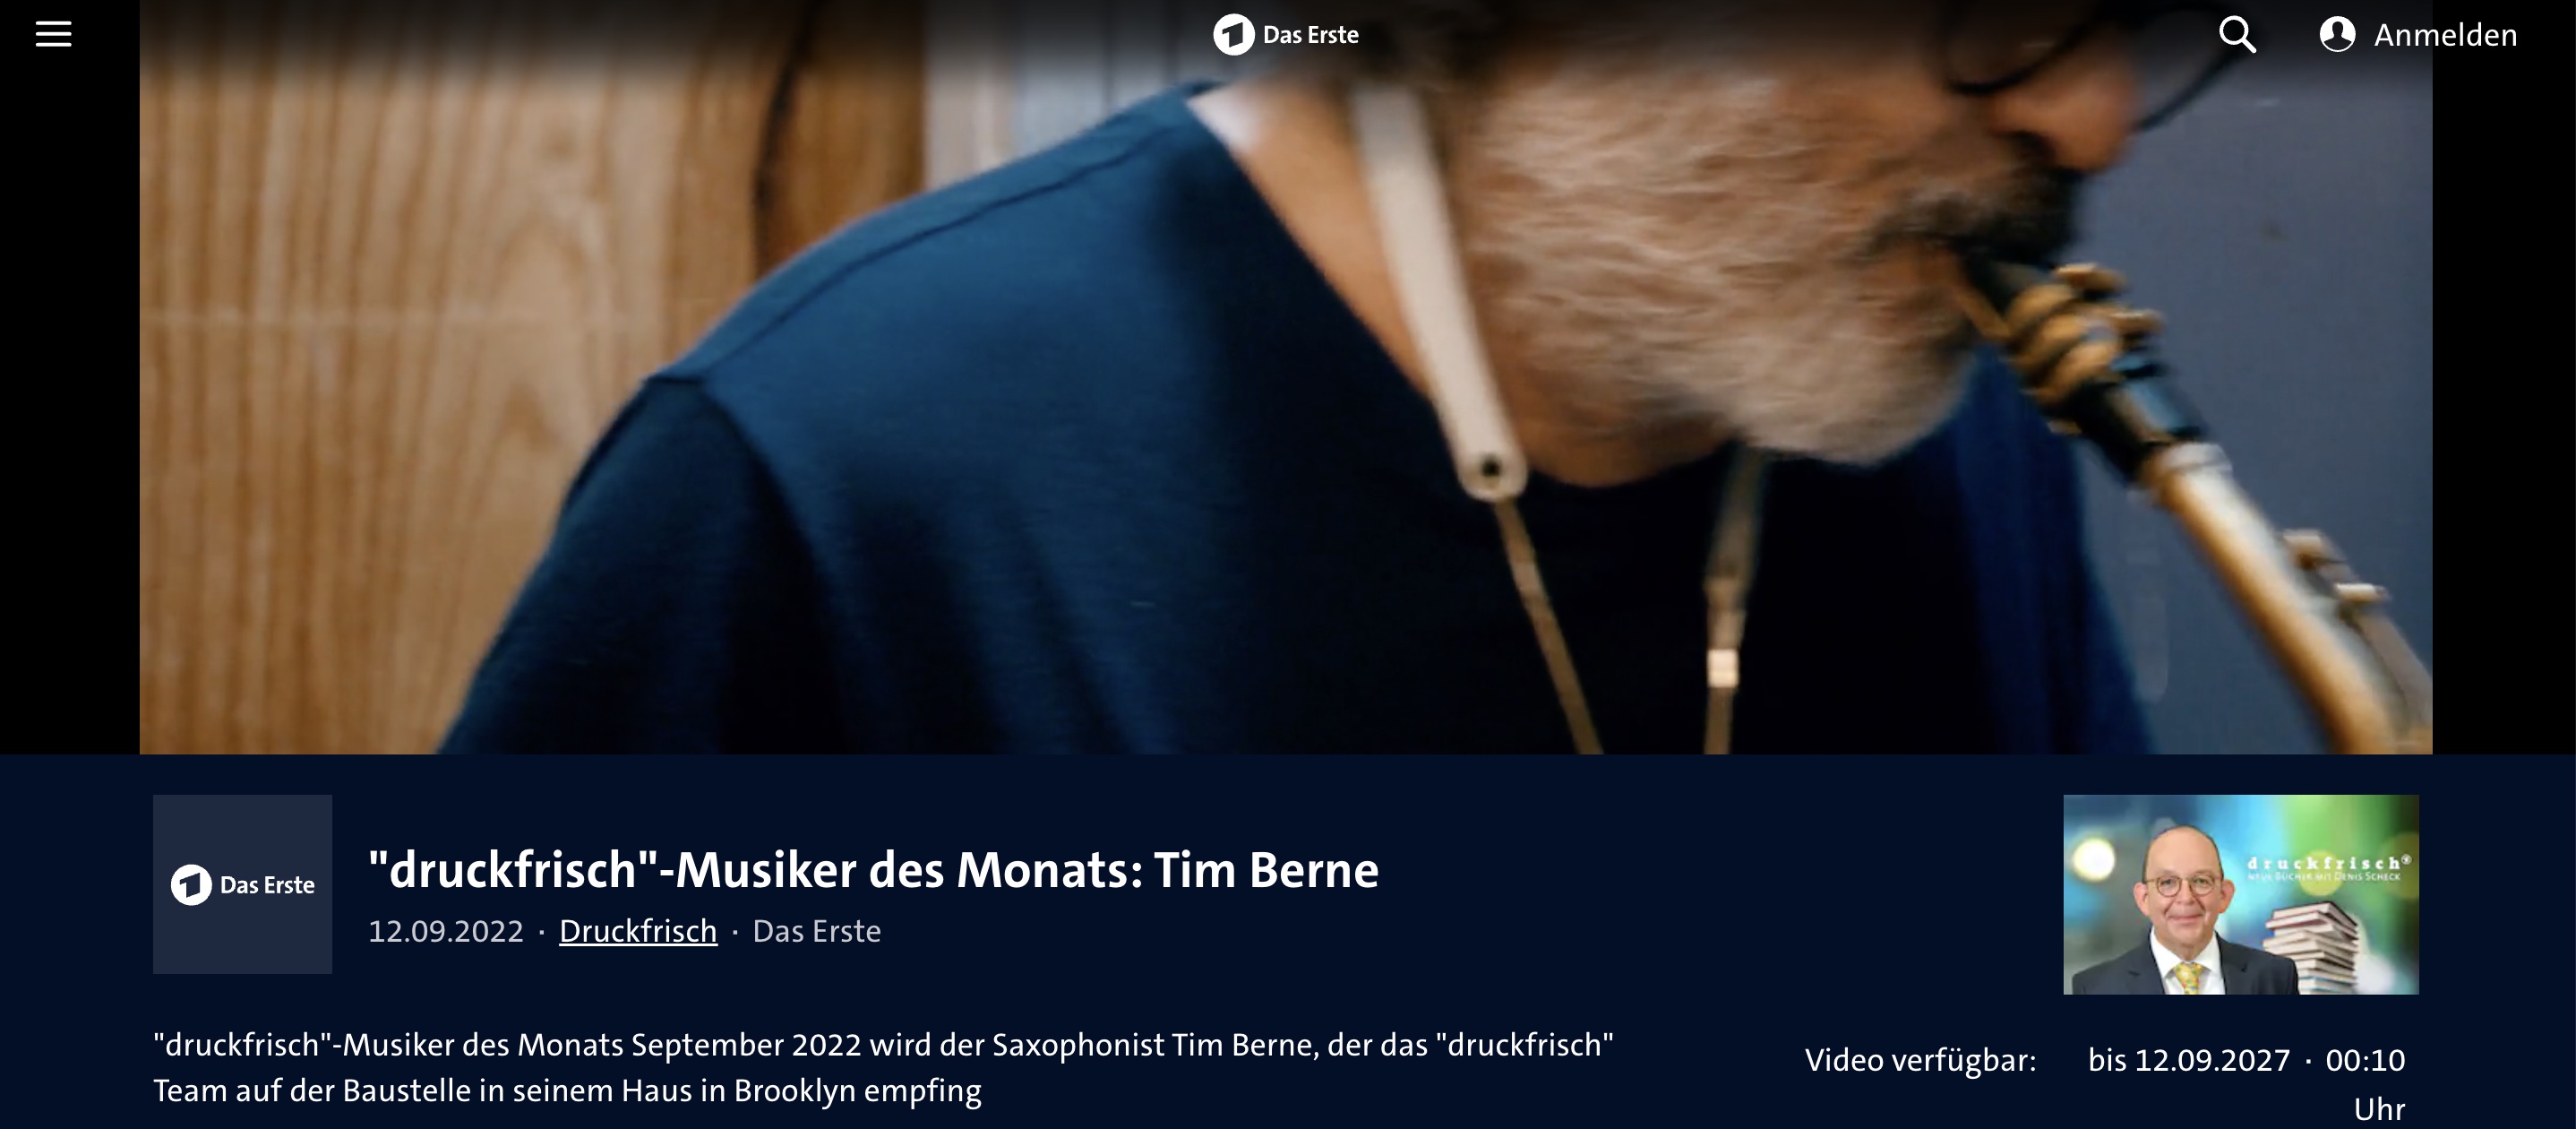 'druckfrisch'-Musiker des Monats September 2022 wird der Saxophonist Tim Berne, der das 'druckfrisch' Team auf der Baustelle in seinem Haus in Brooklyn empfing